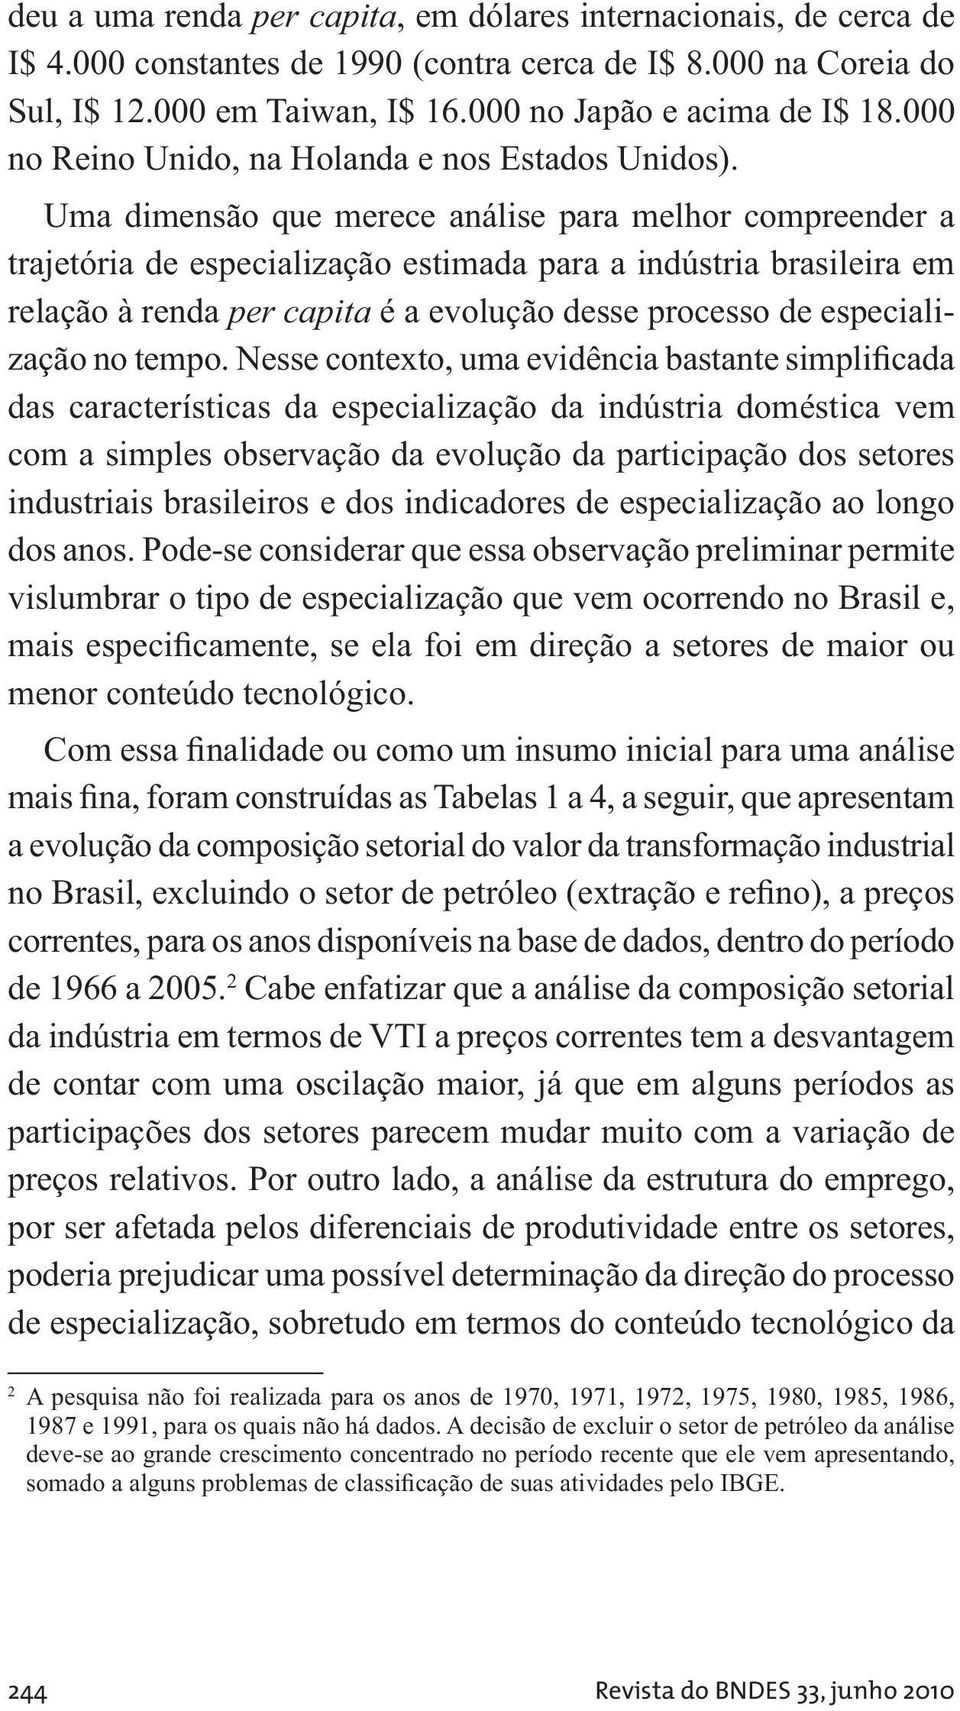 Uma dimensão que merece análise para melhor compreender a trajetória de especialização estimada para a indústria brasileira em relação à renda per capita é a evolução desse processo de especialização